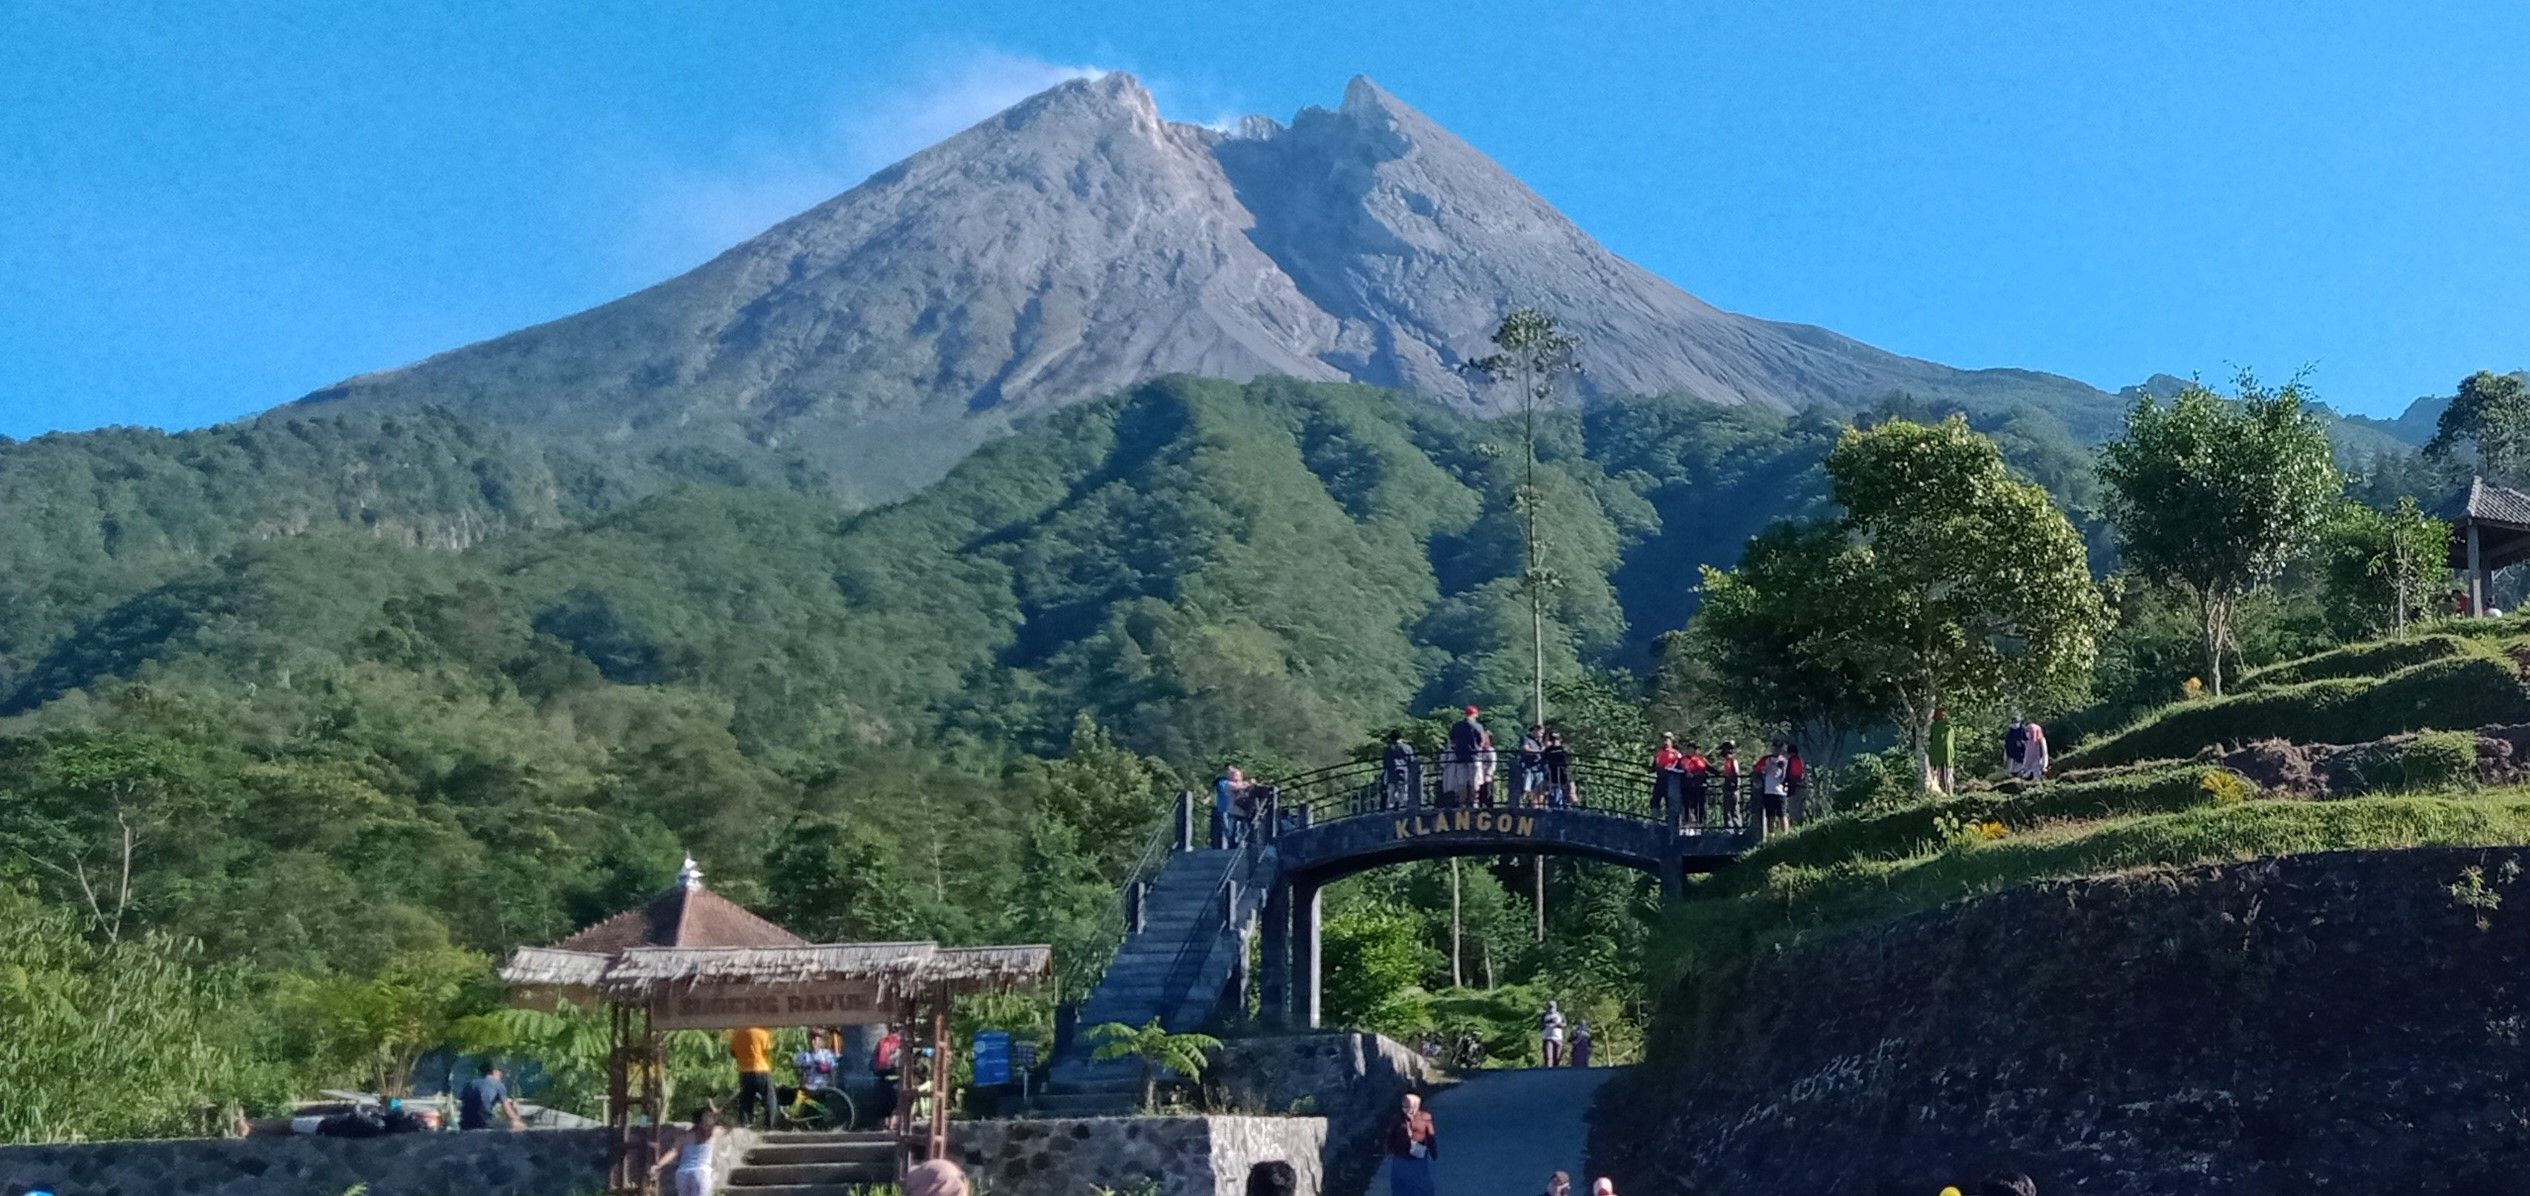 Status Siaga Gunung Merapi  Pemerintah Tutup 4 Wisata di 